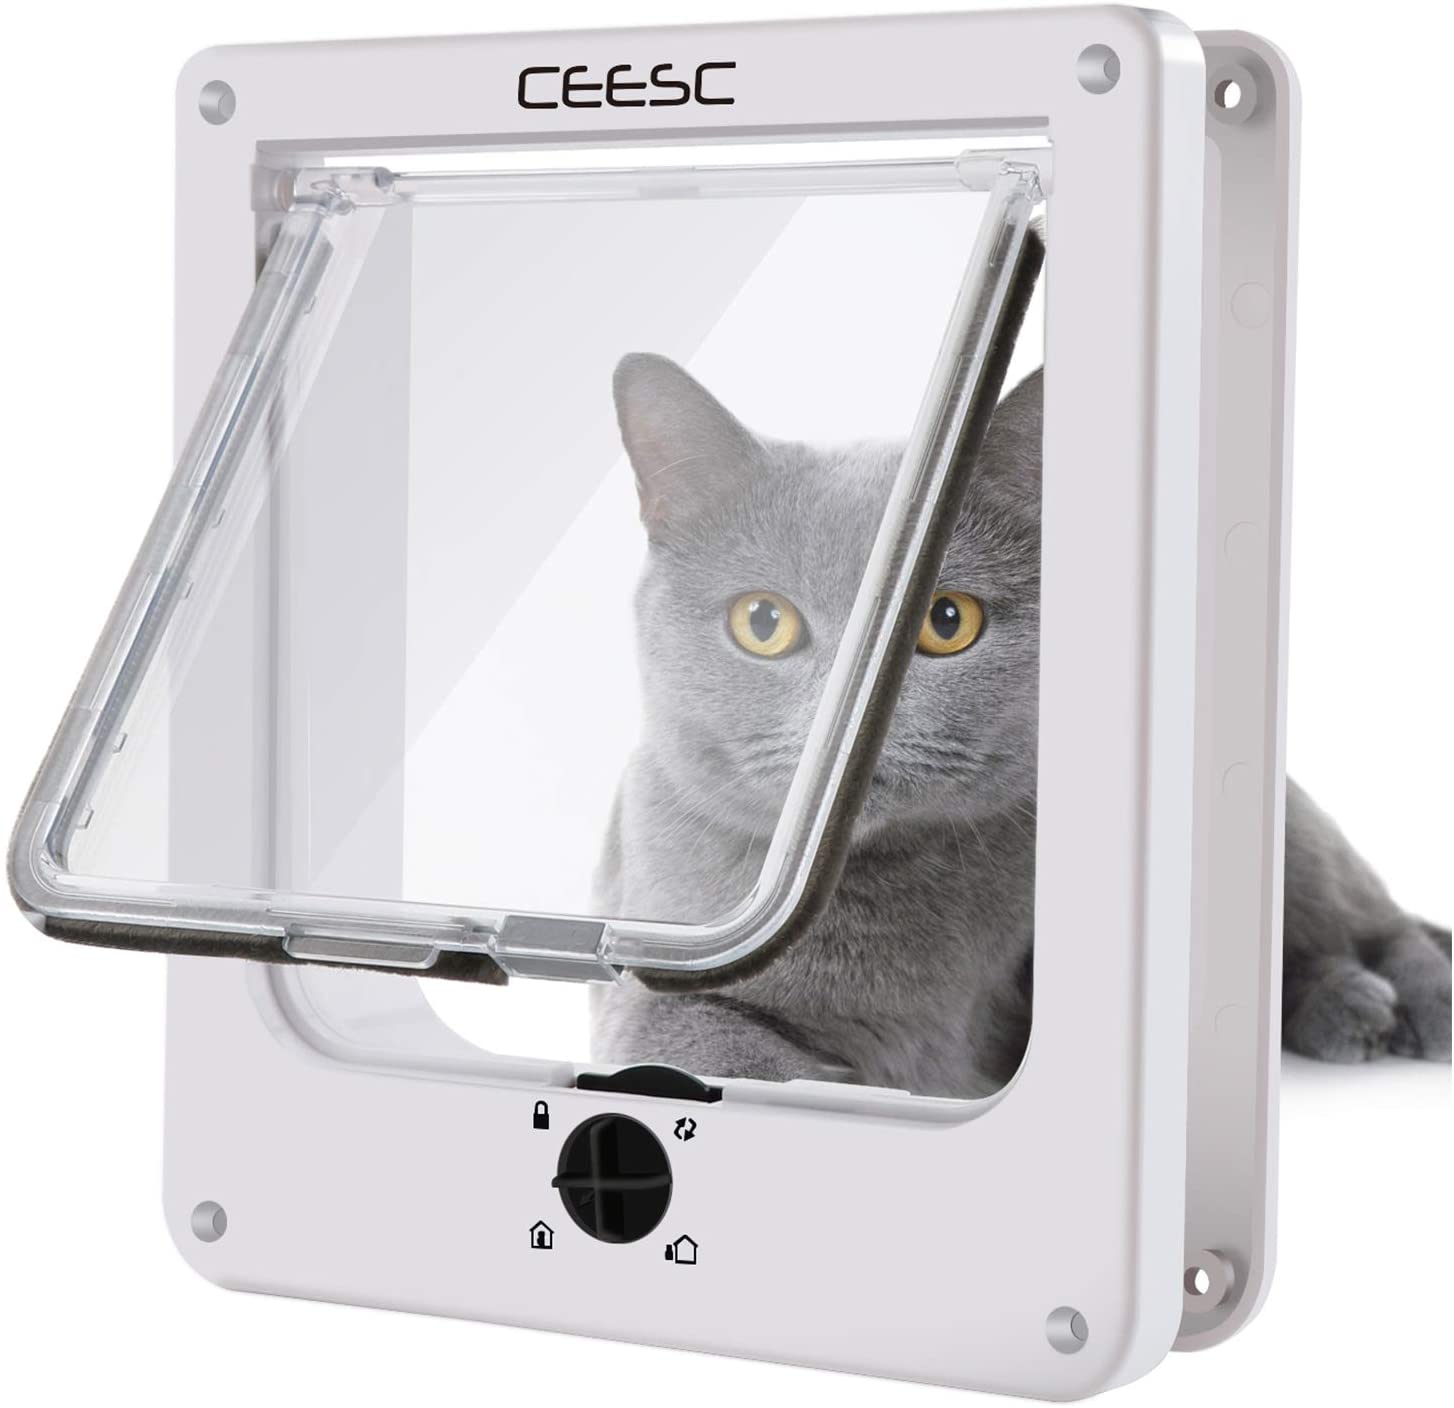  CEESC Puertas para Gatos, Puerta magnética para Mascotas con Bloqueo Giratorio de 4 vías para Gatos, Gatitos y Gatitos, versión Mejorada 